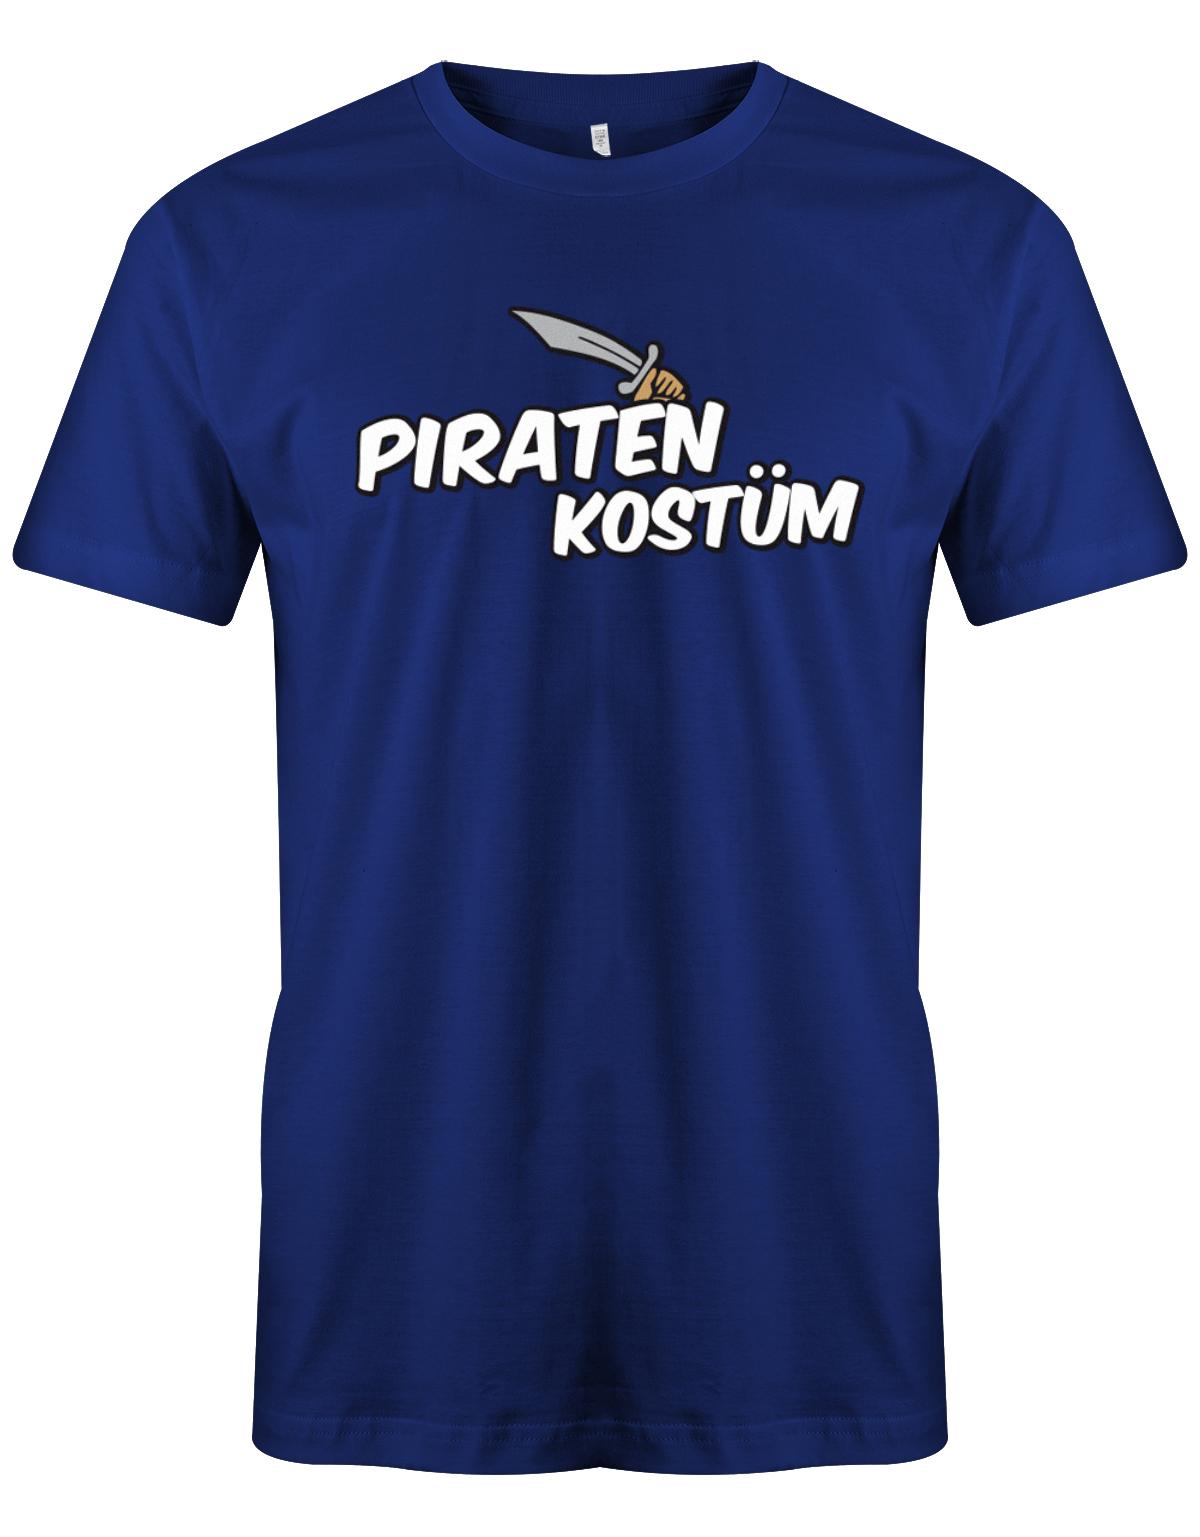 Piraten-Kost-m-Fasching-Karneval-herren-Shirt-Royalblau